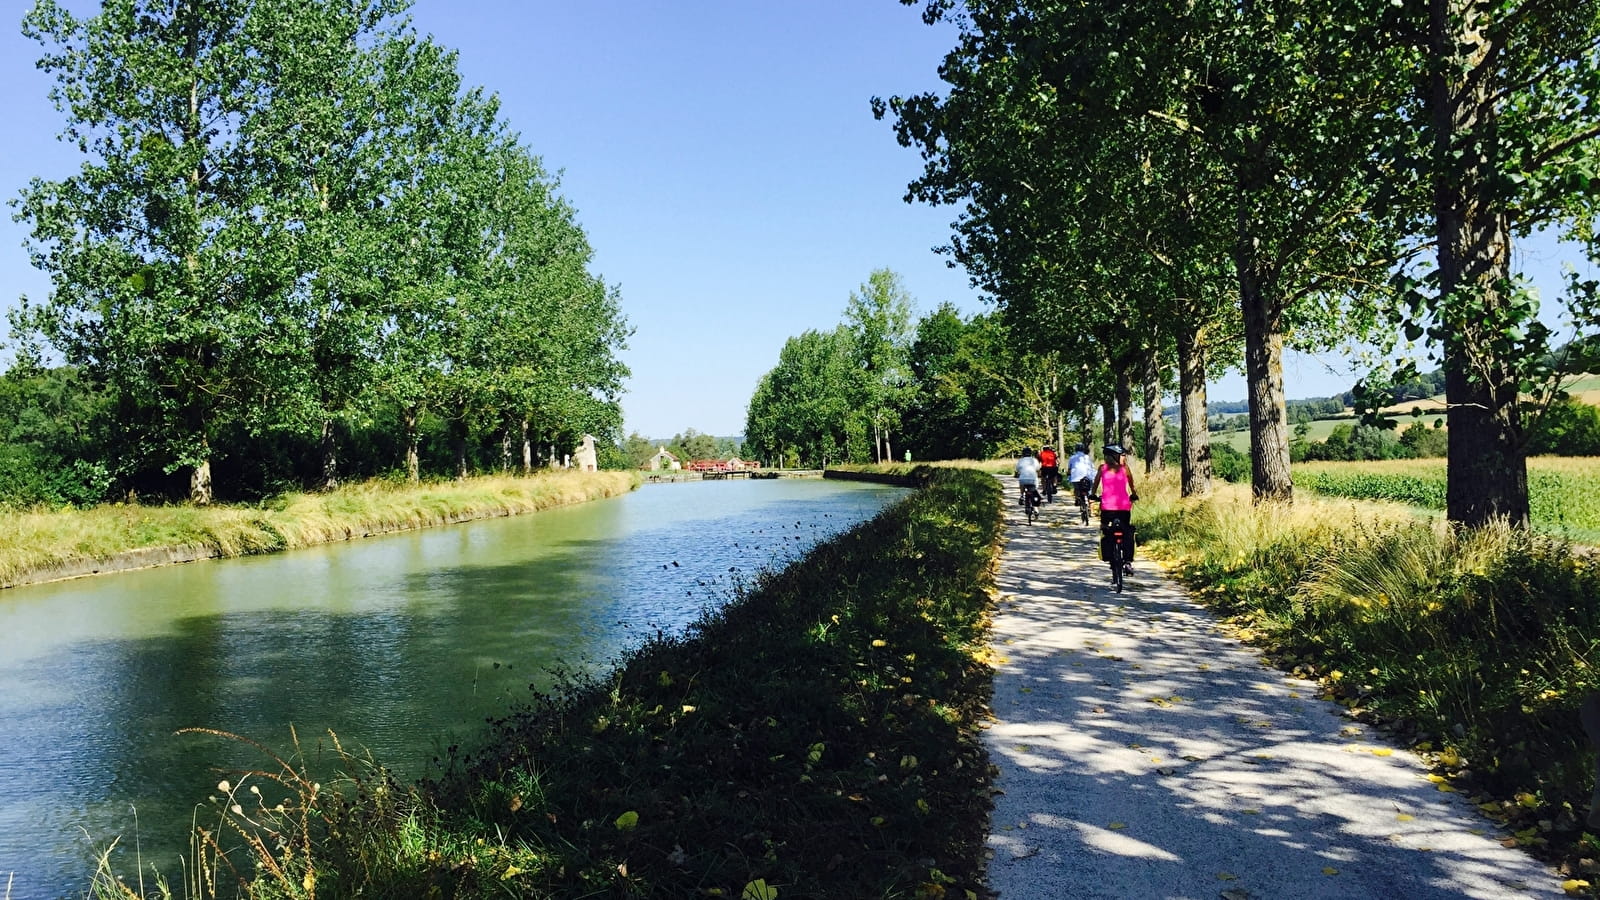 Tagesausflug mit dem Fahrrad - Entlang des Canal de Bourgogne